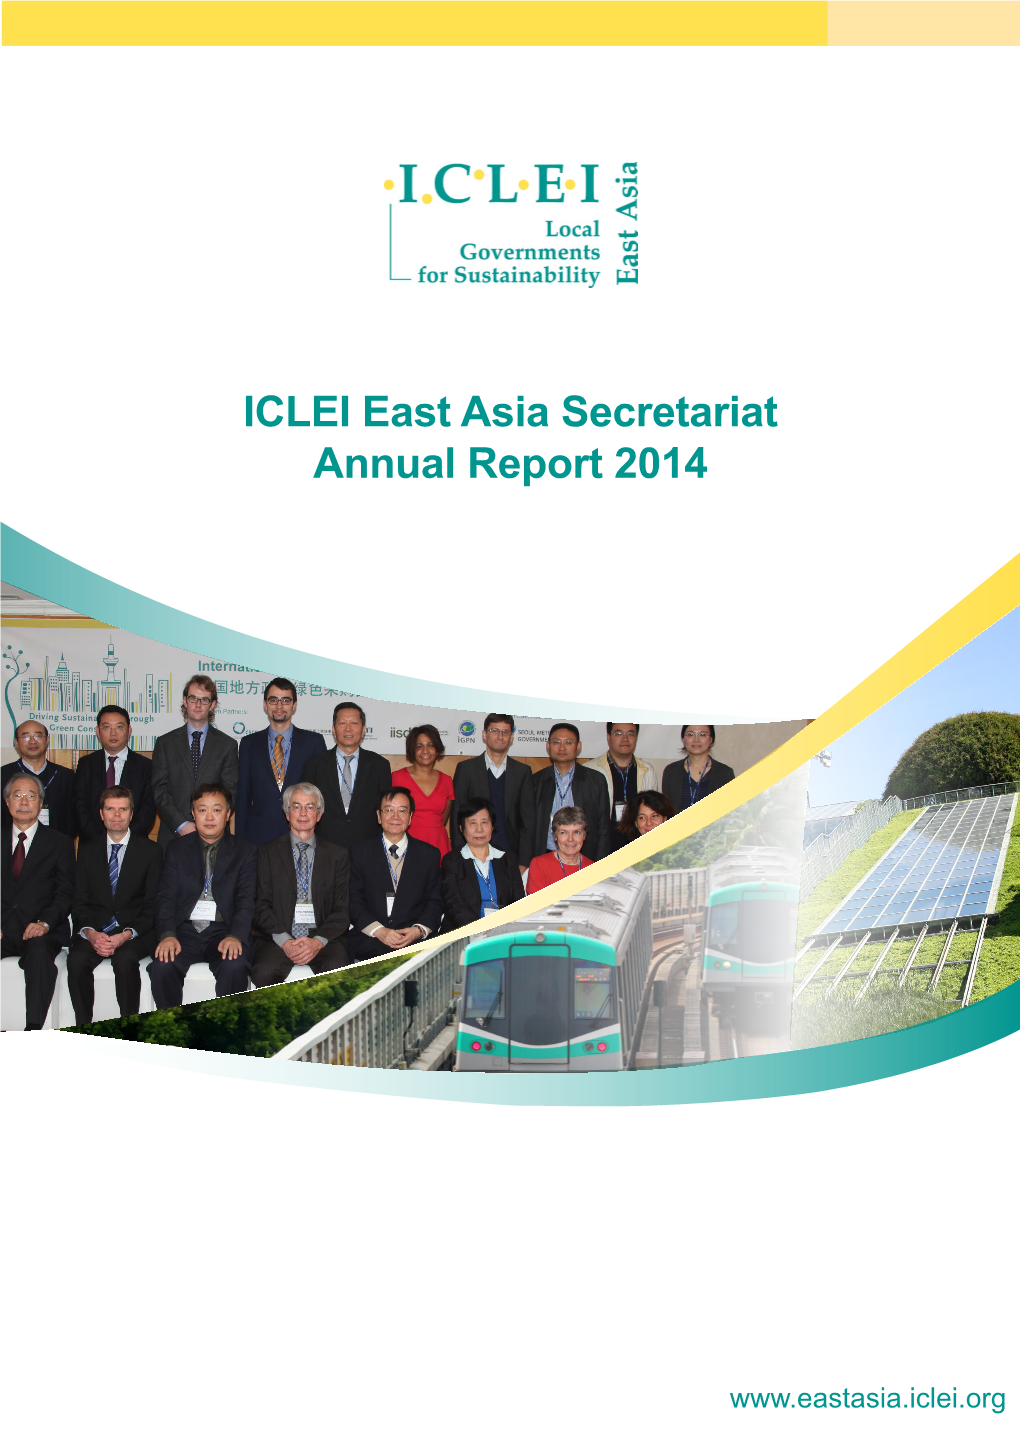 ICLEI East Asia Secretariat Annual Report 2014